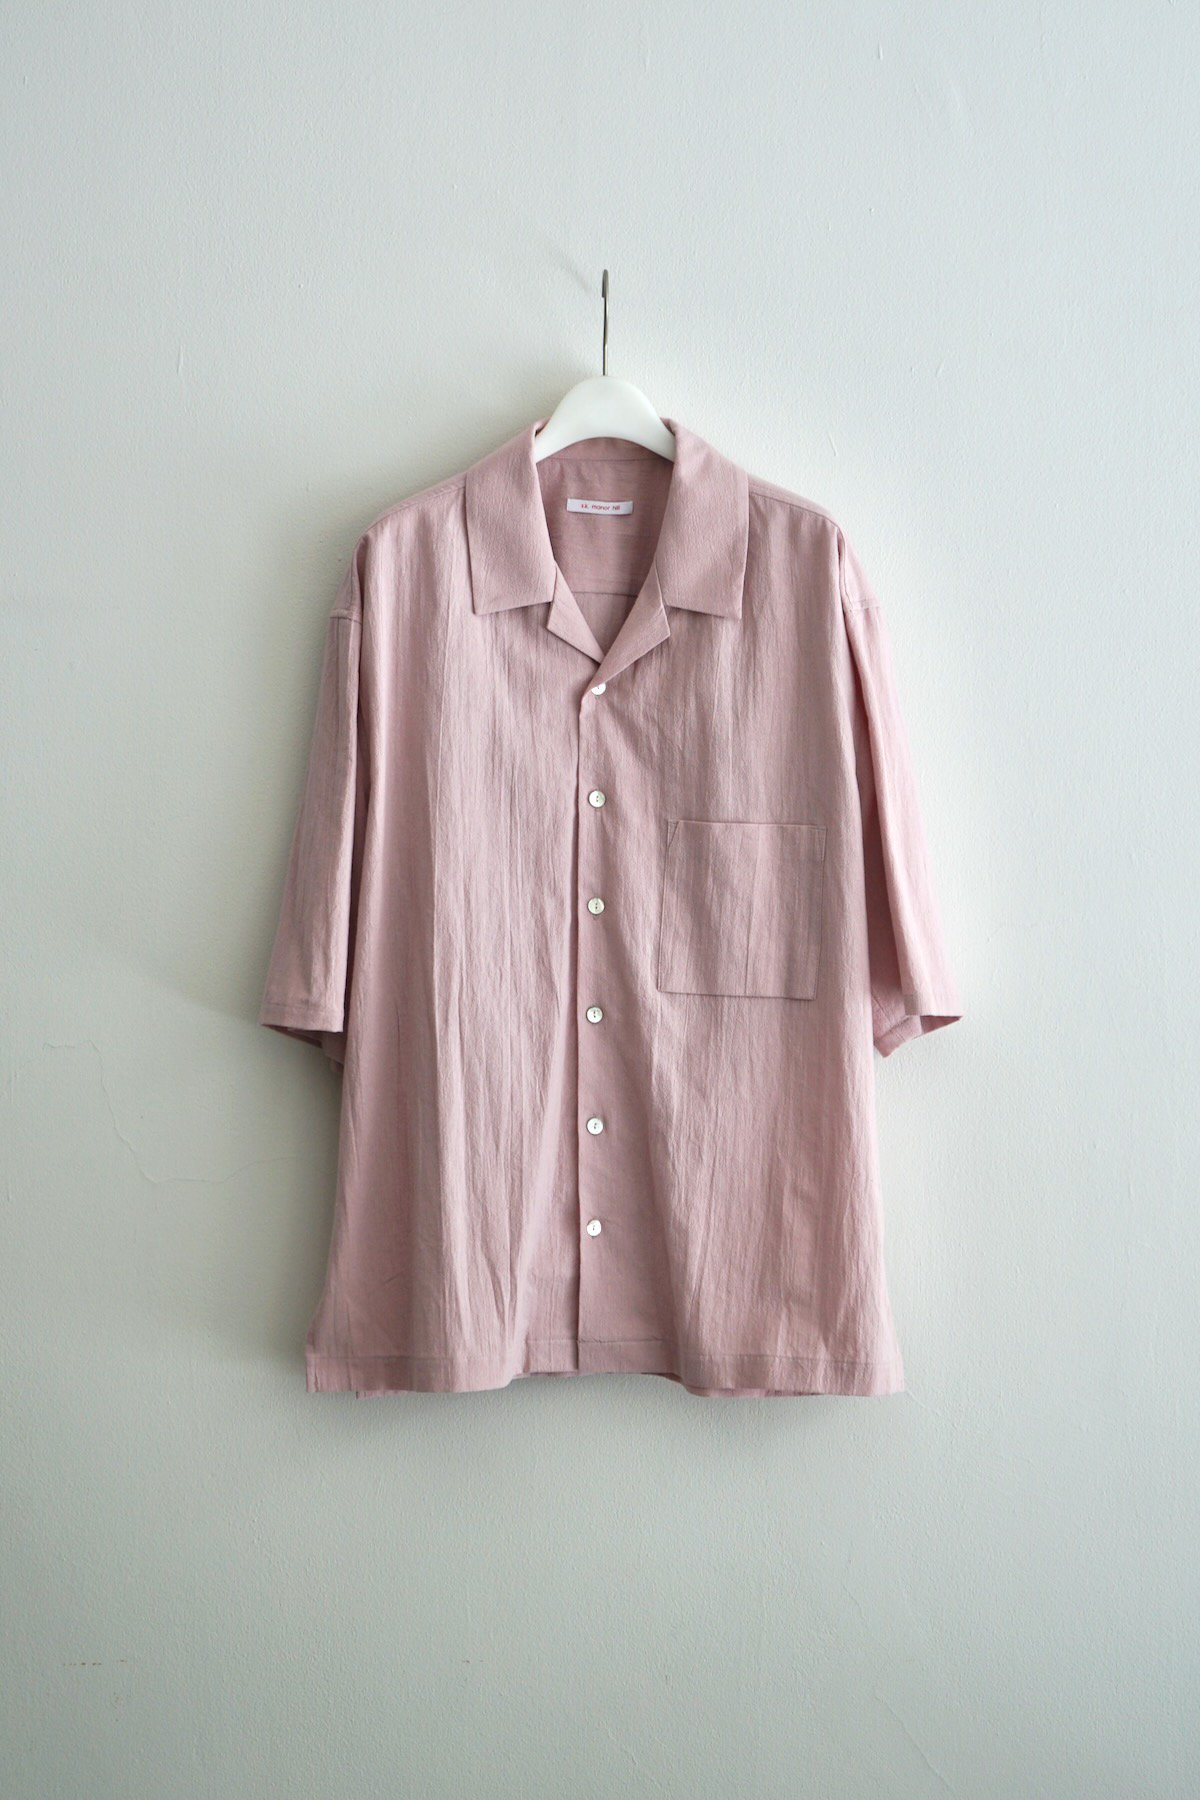 s.k. manor hill / Aloha Shirt / Rose Cotton Linen